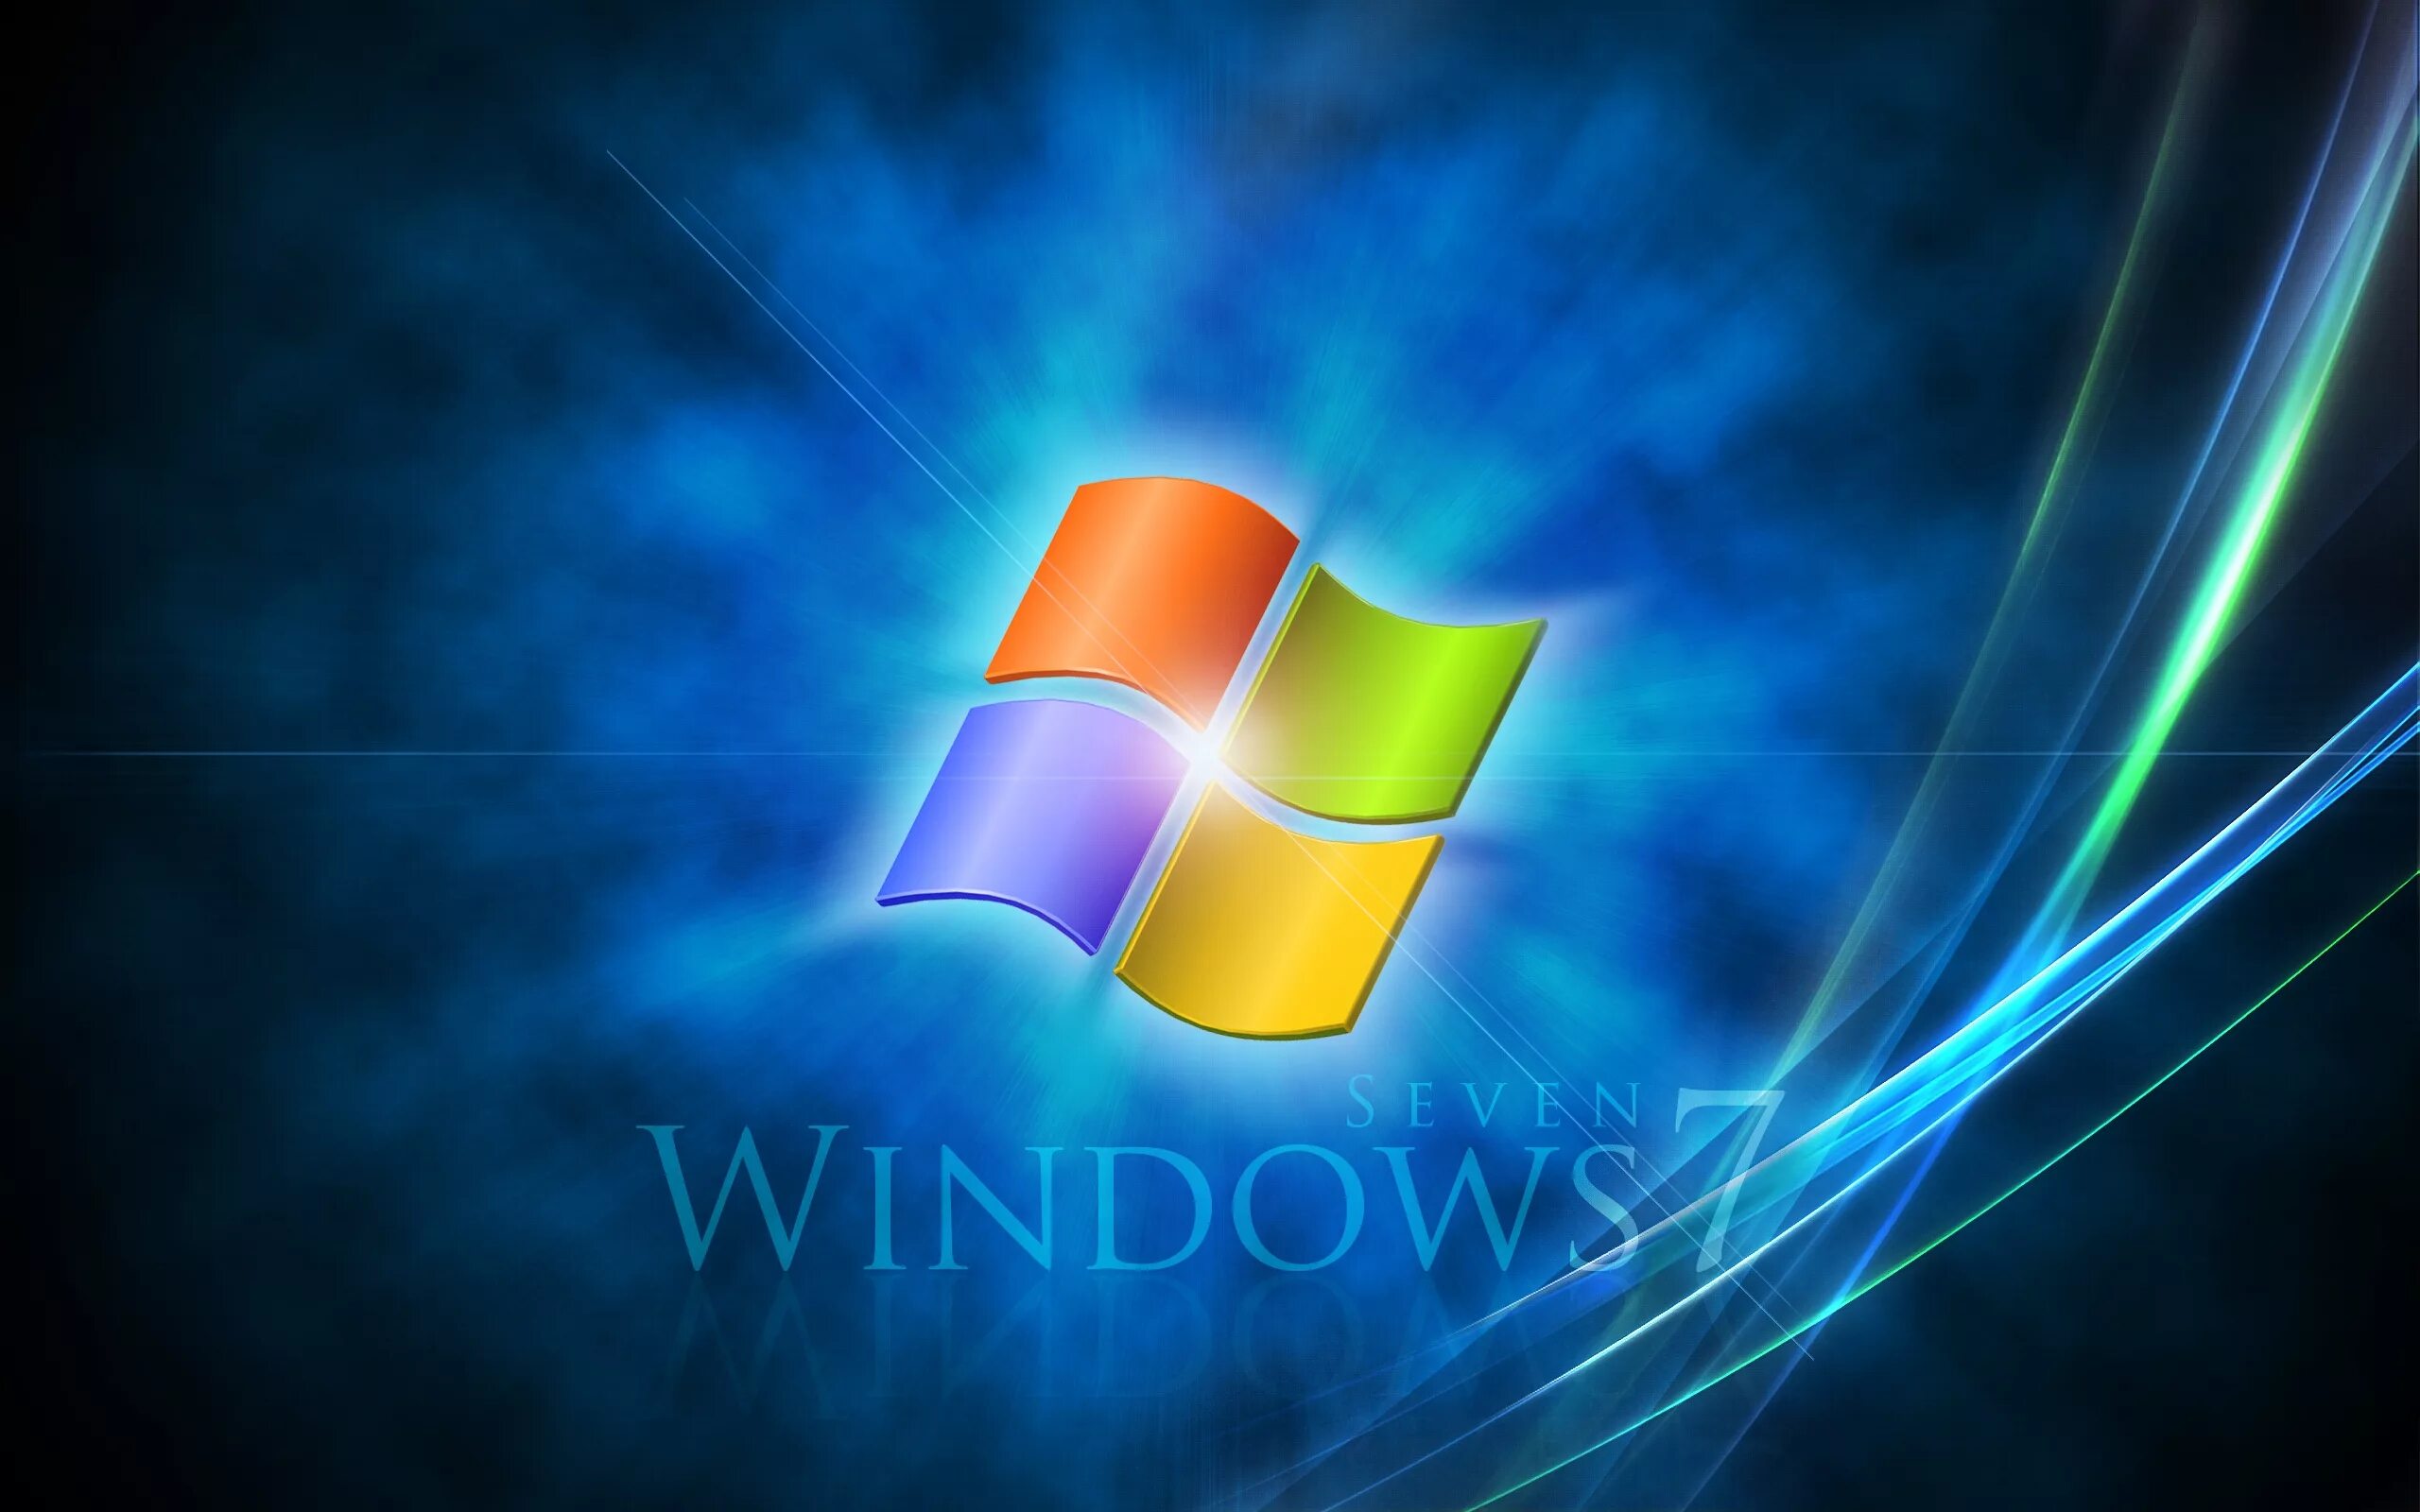 Windows 7 life. Виндовс 7. Windows 7 рабочий стол. Логотип Windows. Заставка виндовс.